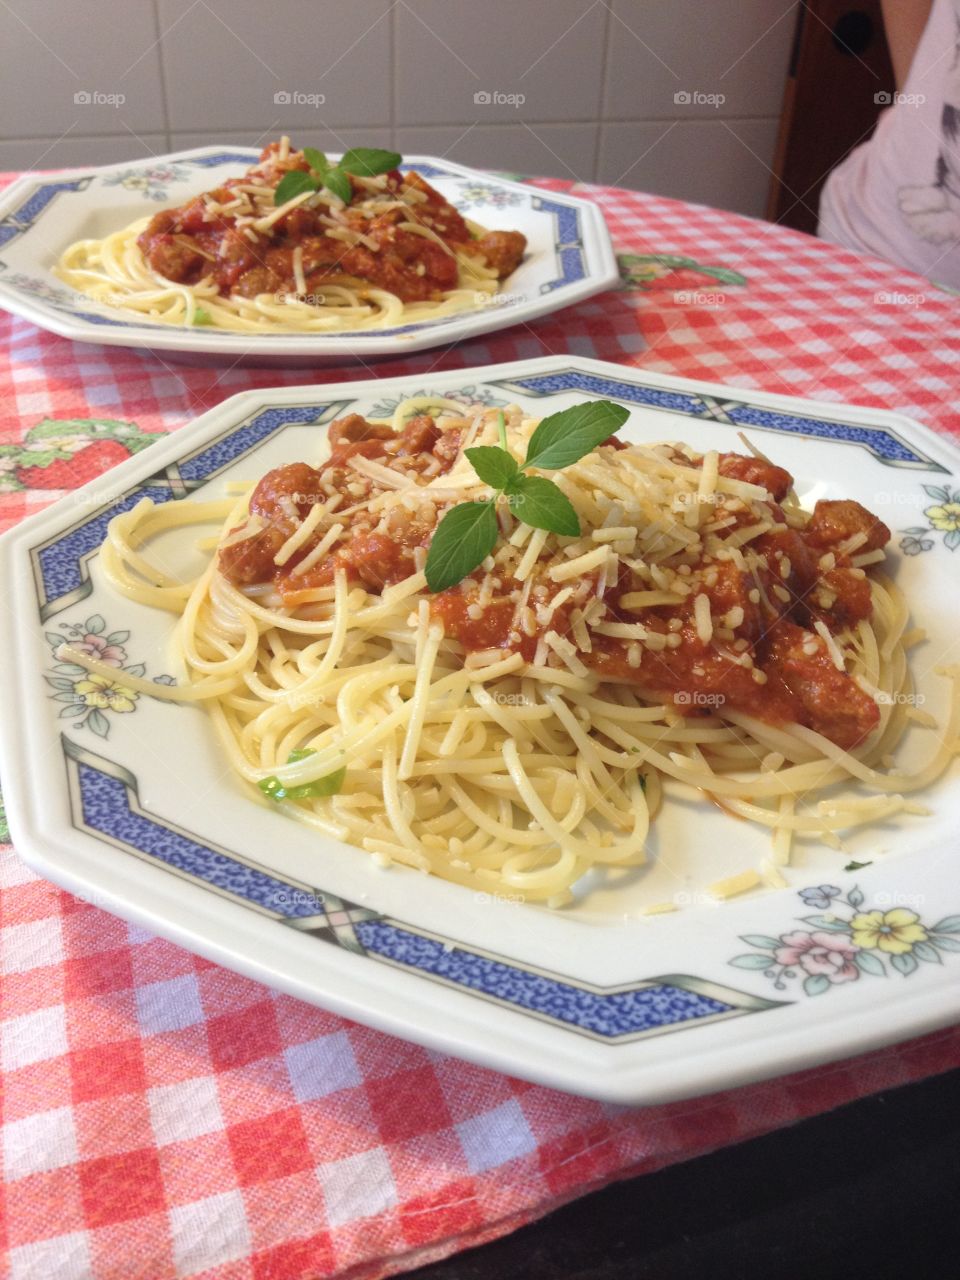 Comida italiana
Italian food
Pasta
Massa